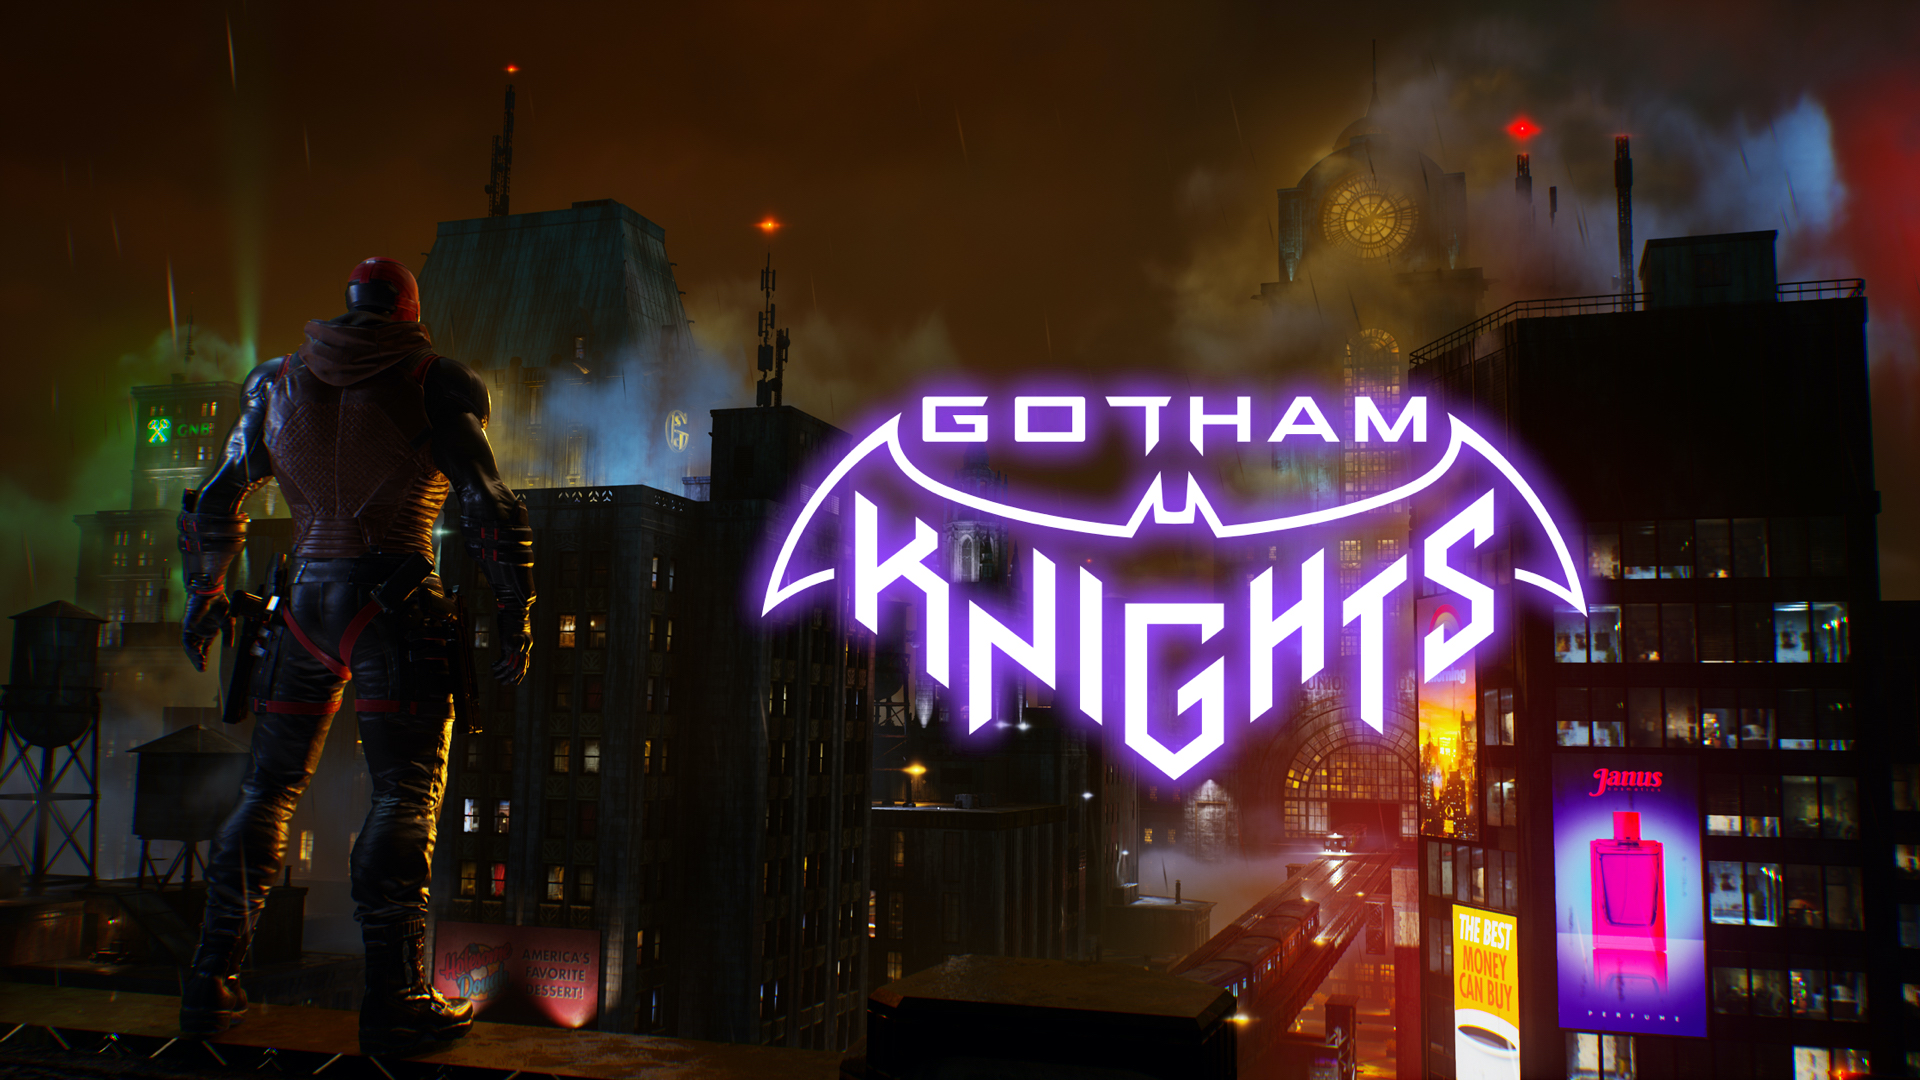 Gotham Knights ma yeelan doonaan wax Heer ah Gating, Agaasimaha Hal-abuurka ayaa leh